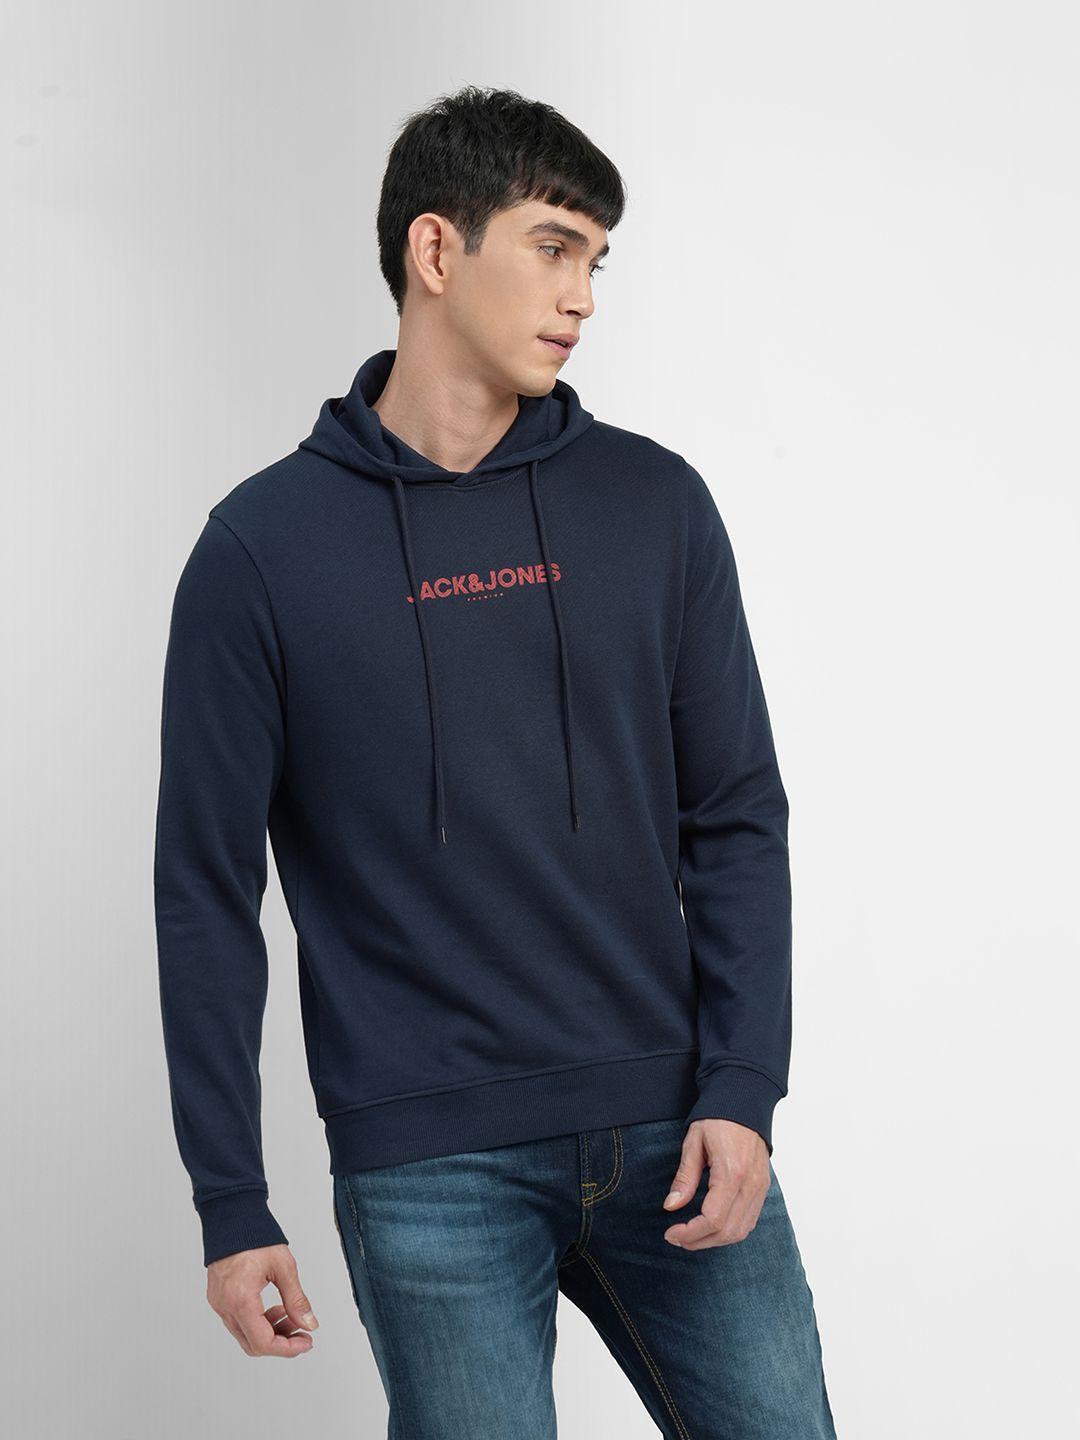 jack & jones men blue brand logo printed hooded sweatshirt